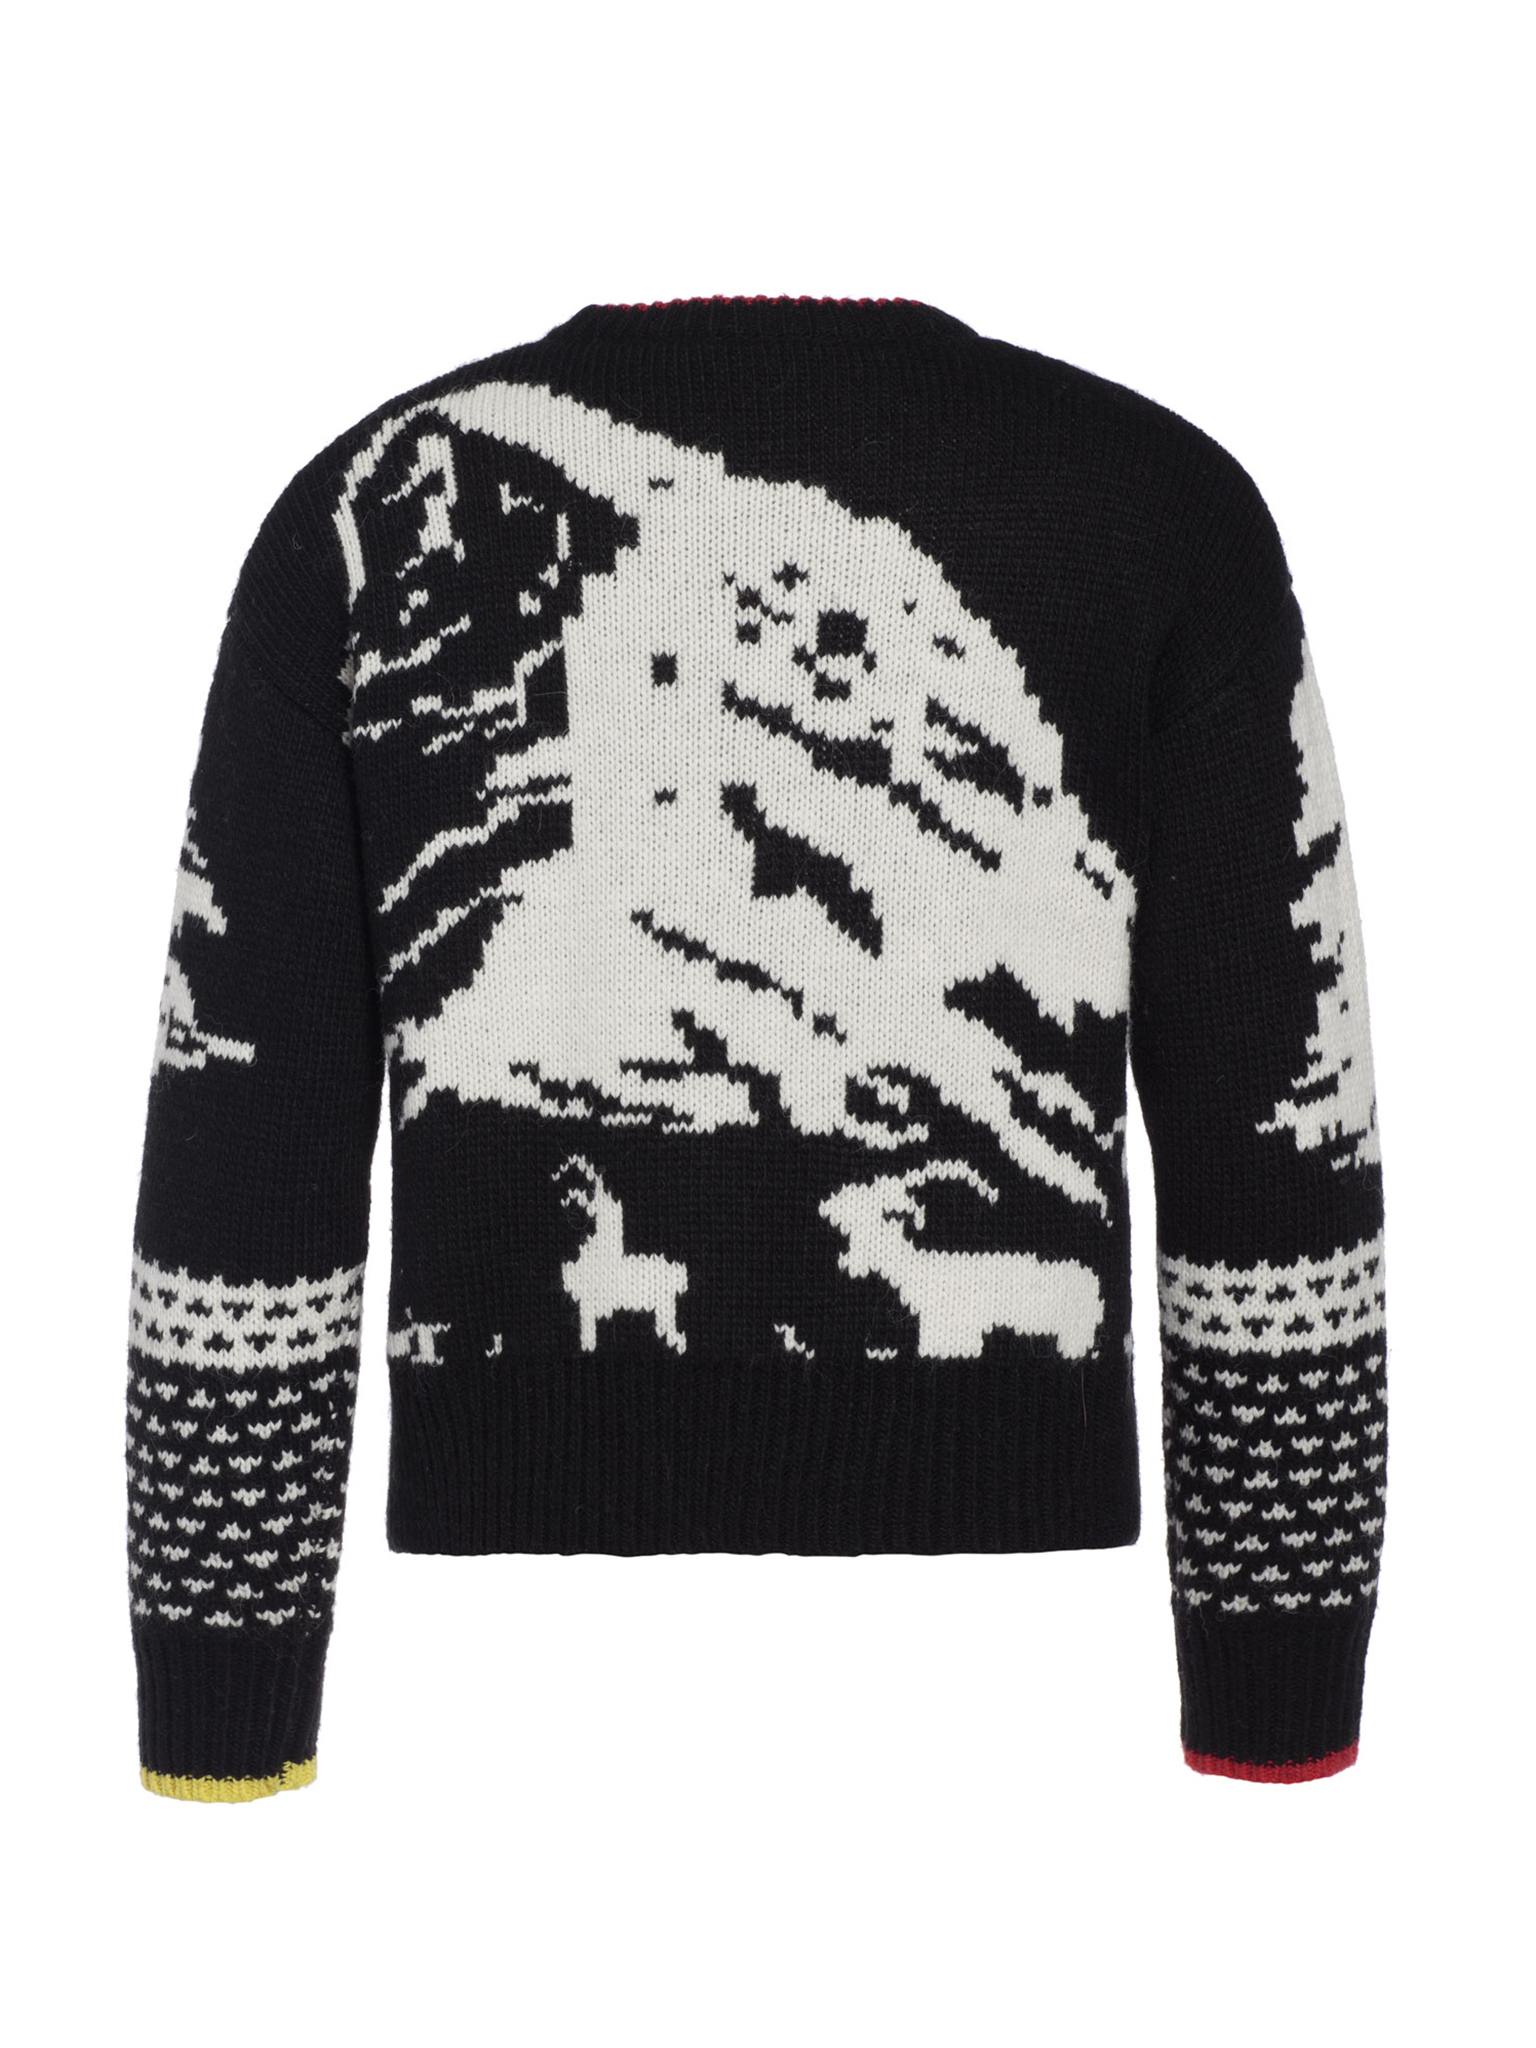 Goldbergh Rox Knit Sweater L/S